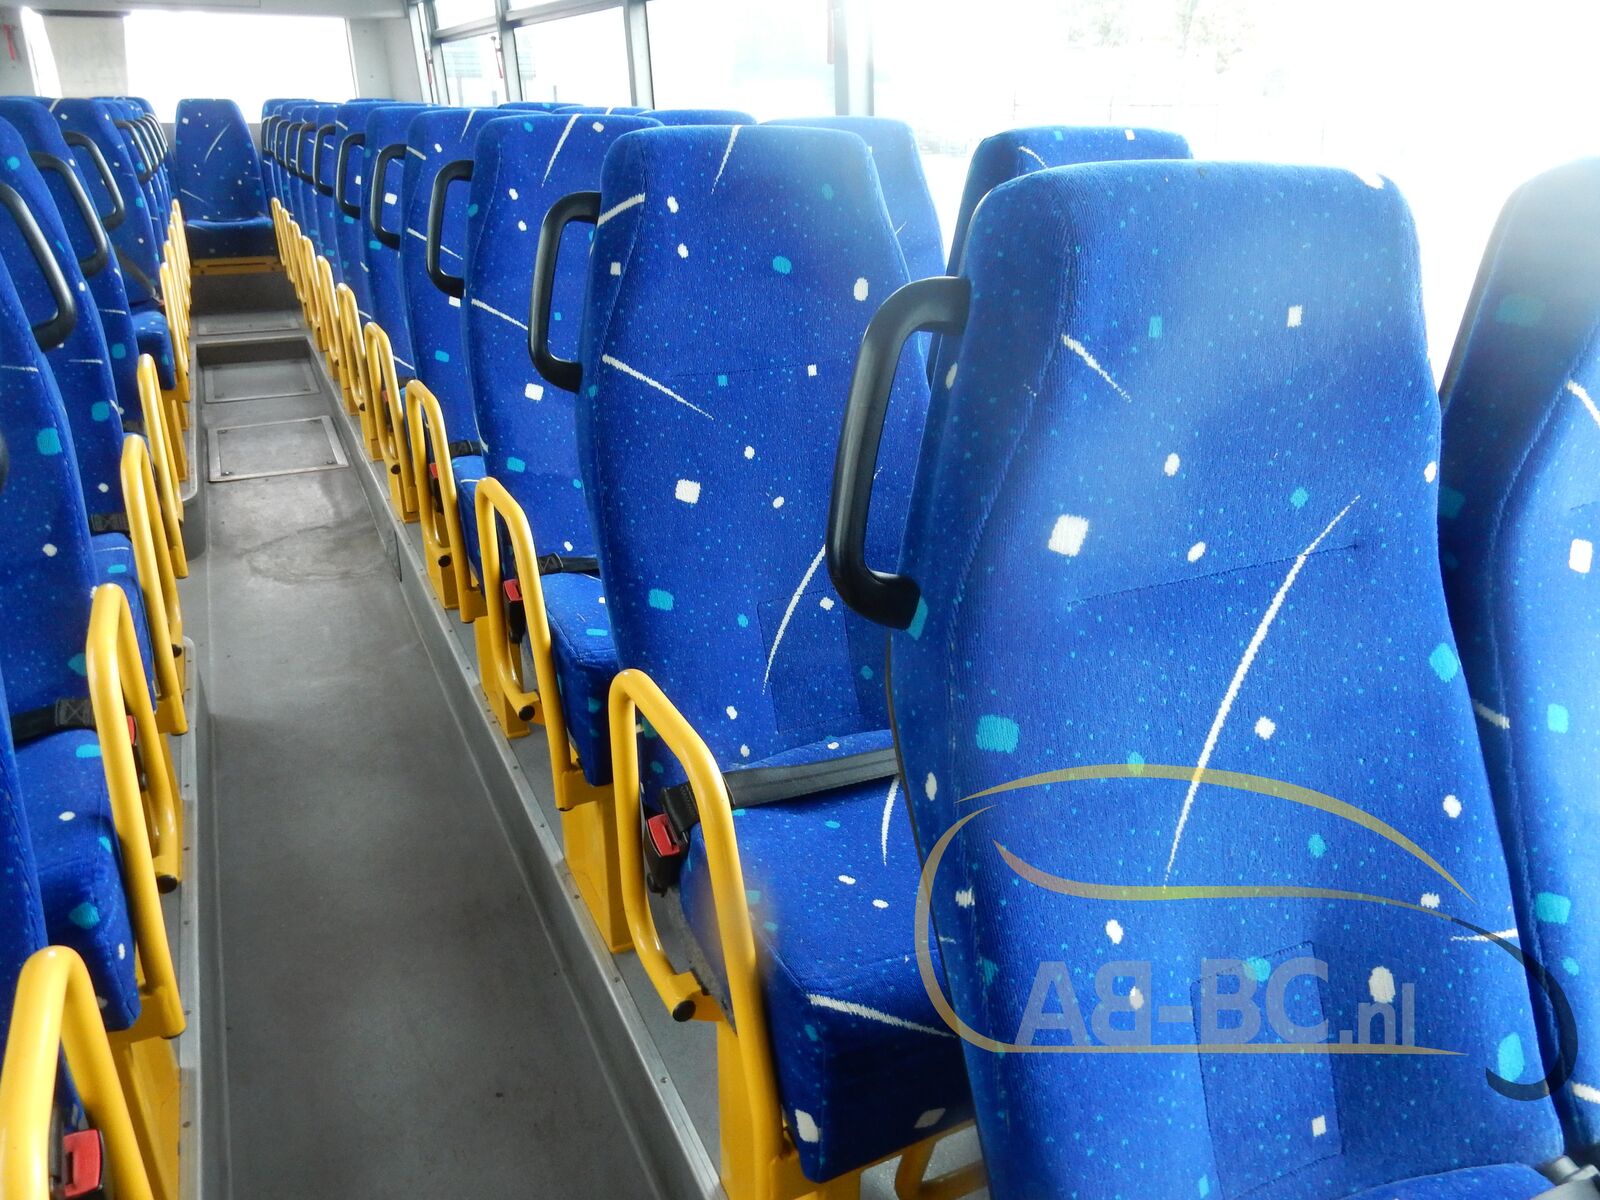 interurban-bus-IVECO-Irisbus-Recreo-64-Seats---1634818676810916395_orig_c6b764a80a58ec2764d0575ddde39a9d--21102115152205689900